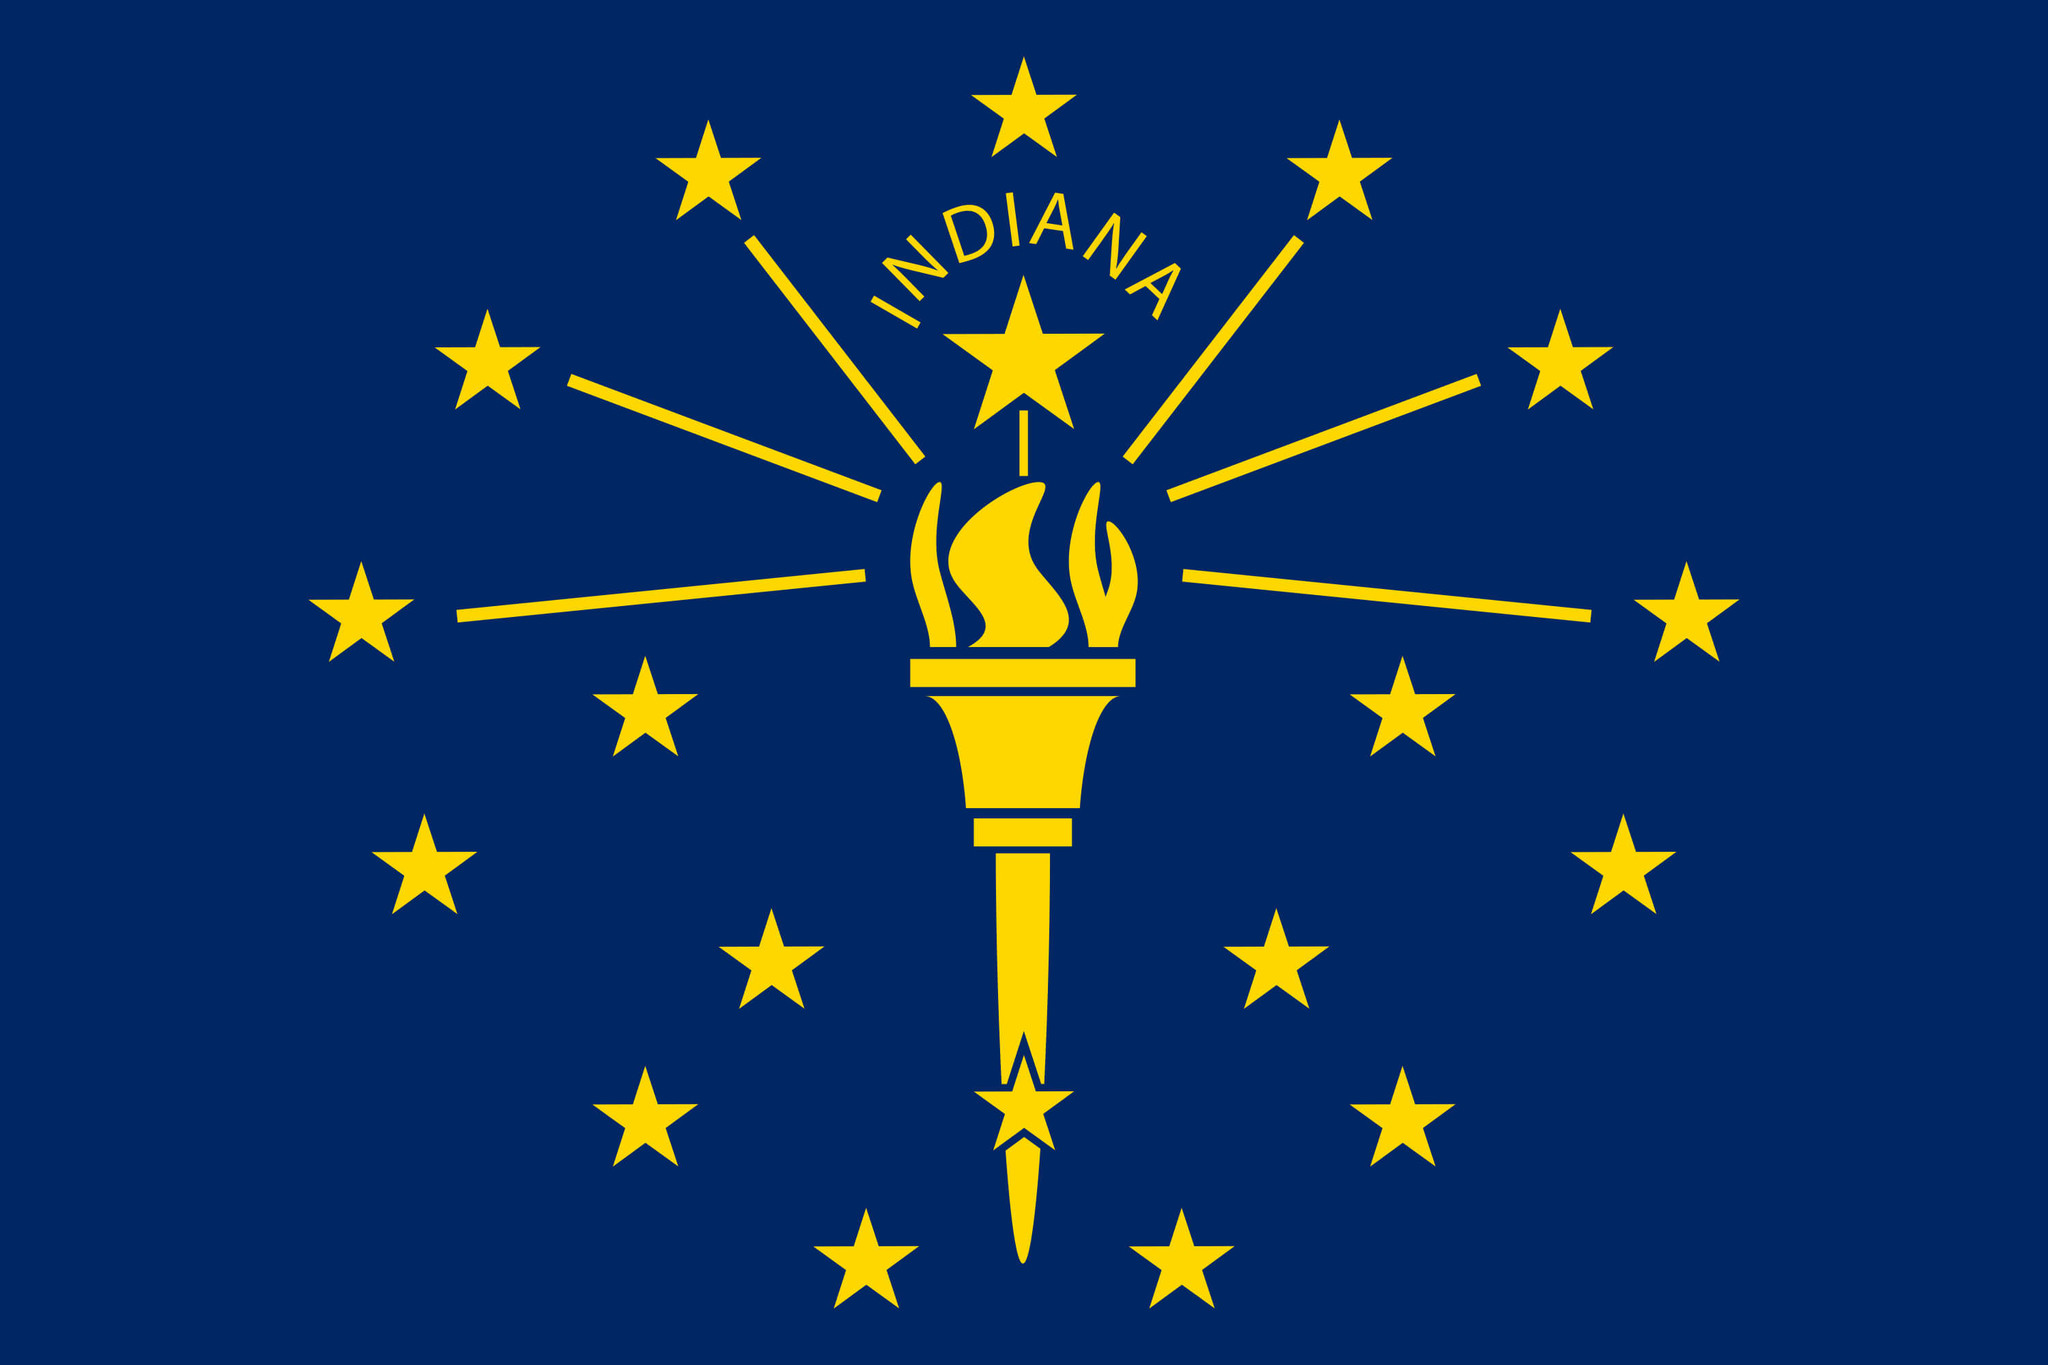 Drapeau de l'Indiana image et signification du drapeau de l'Indiana